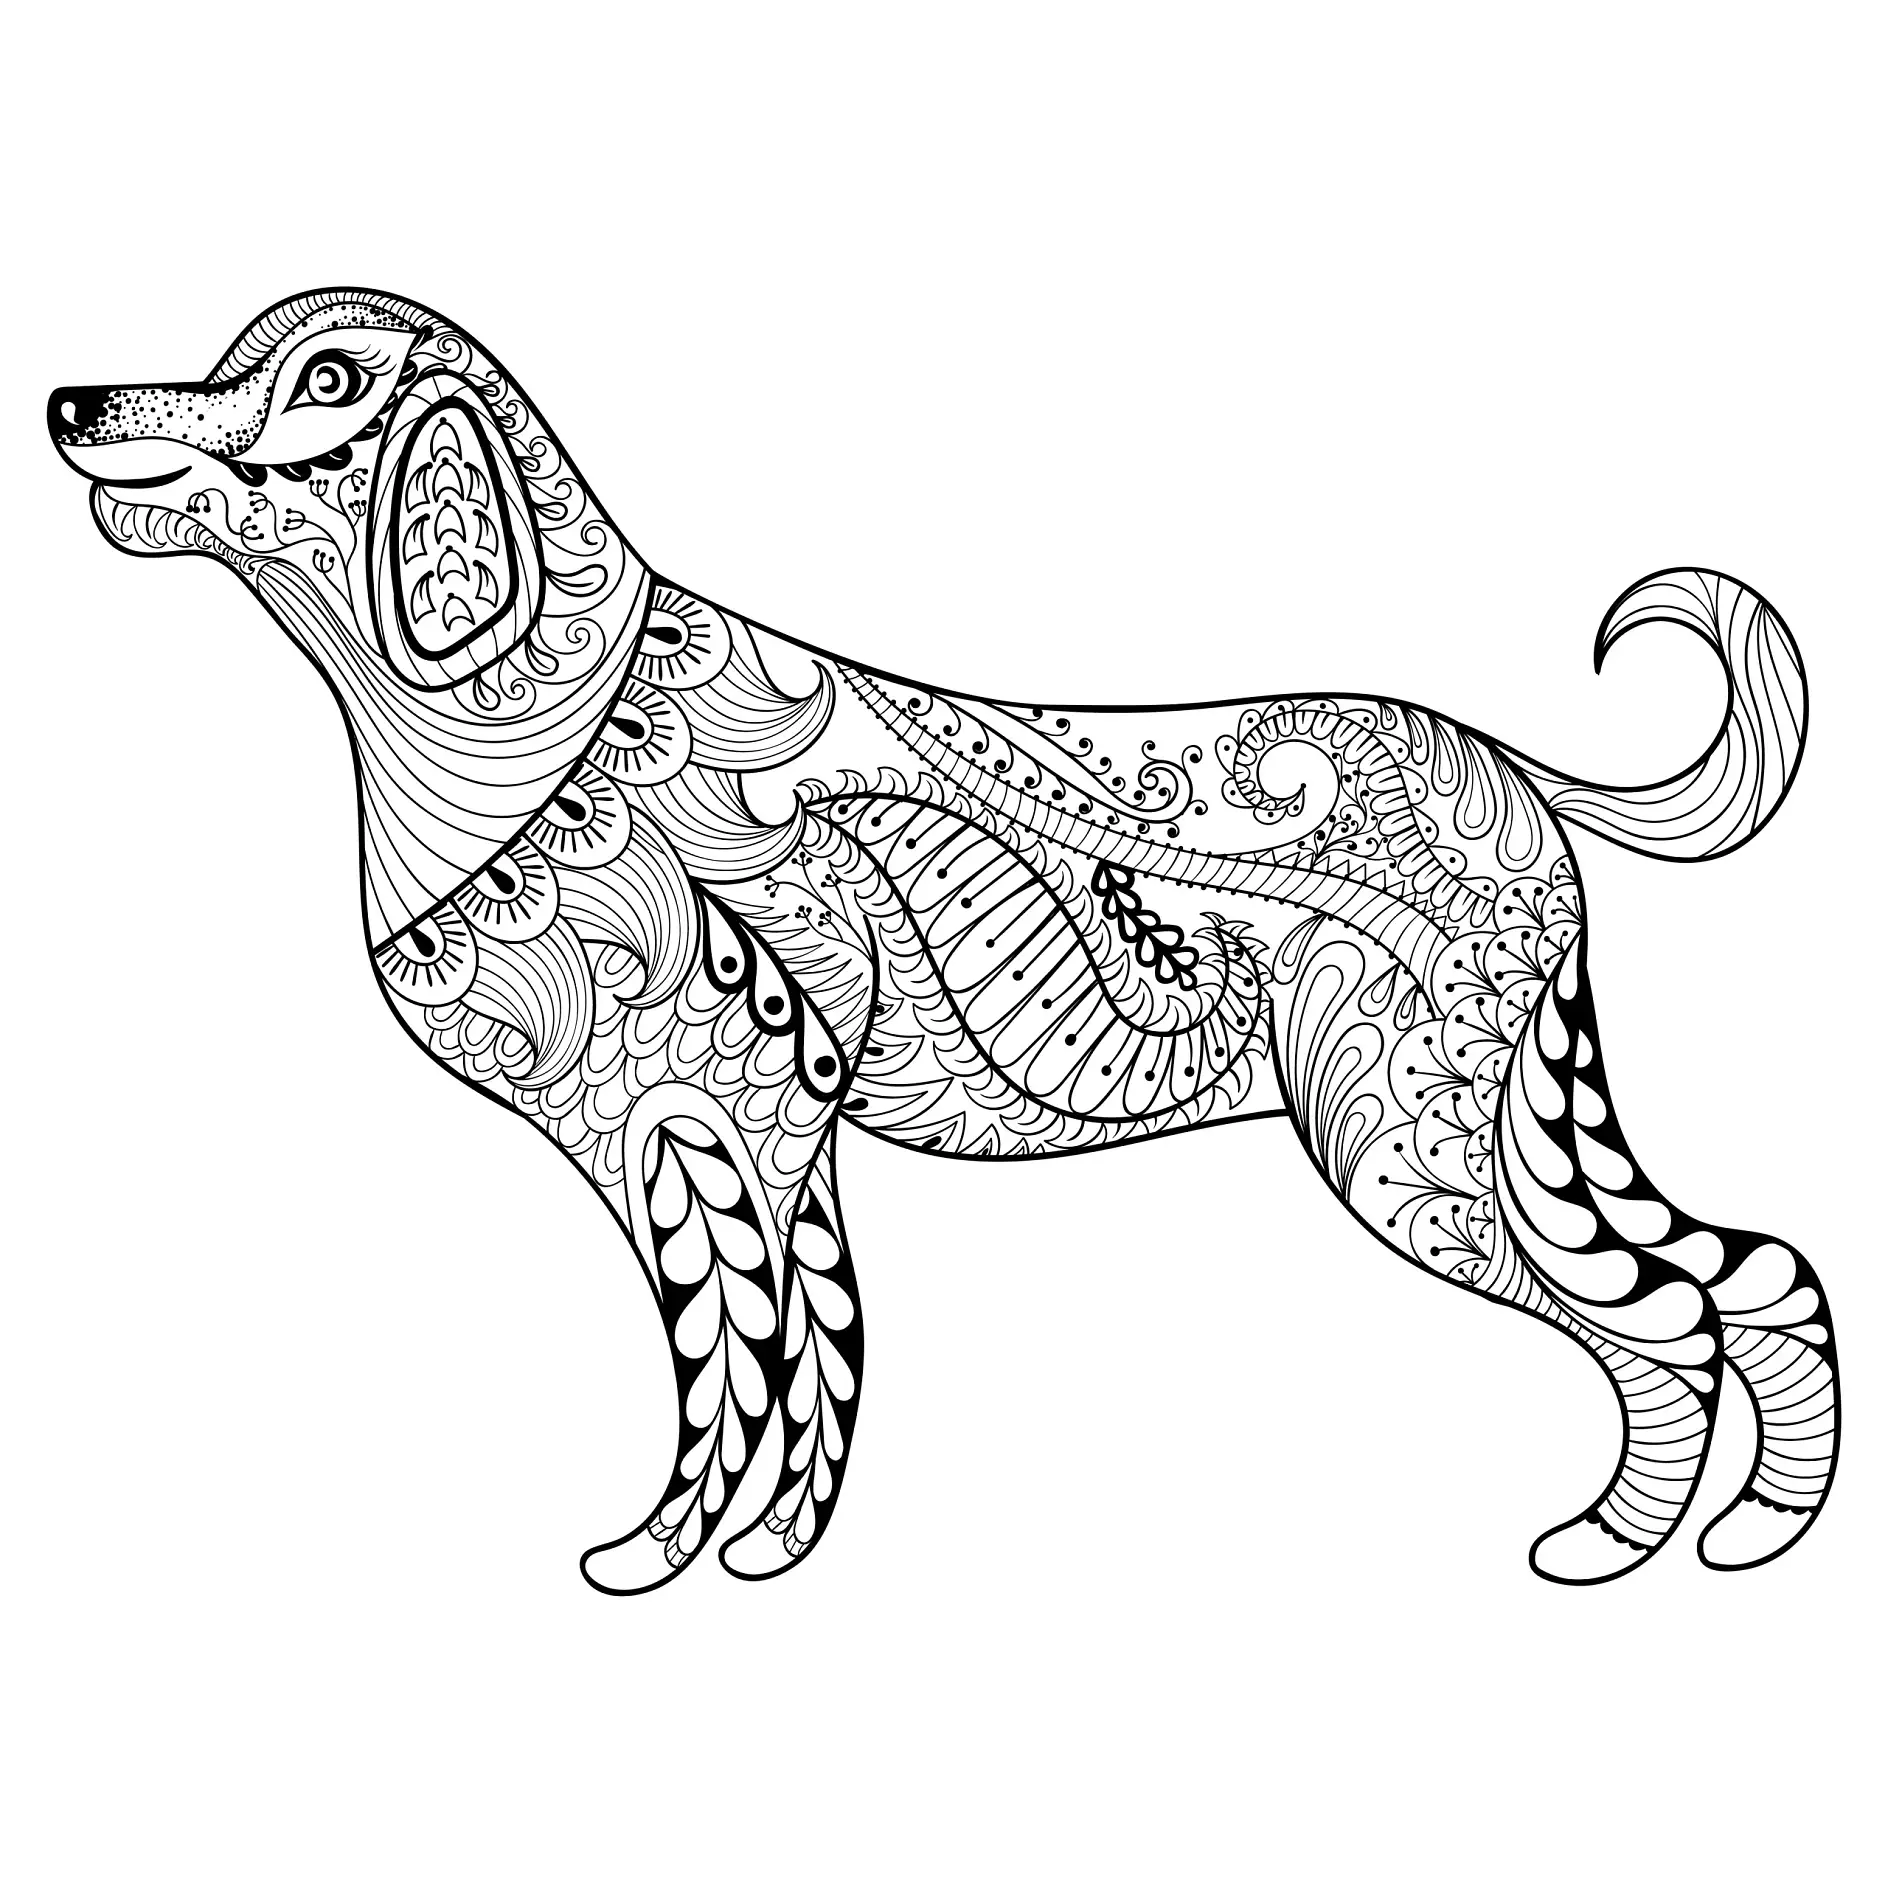 Ausmalbild Mandala mit Hund und filigranen floralen Mustern